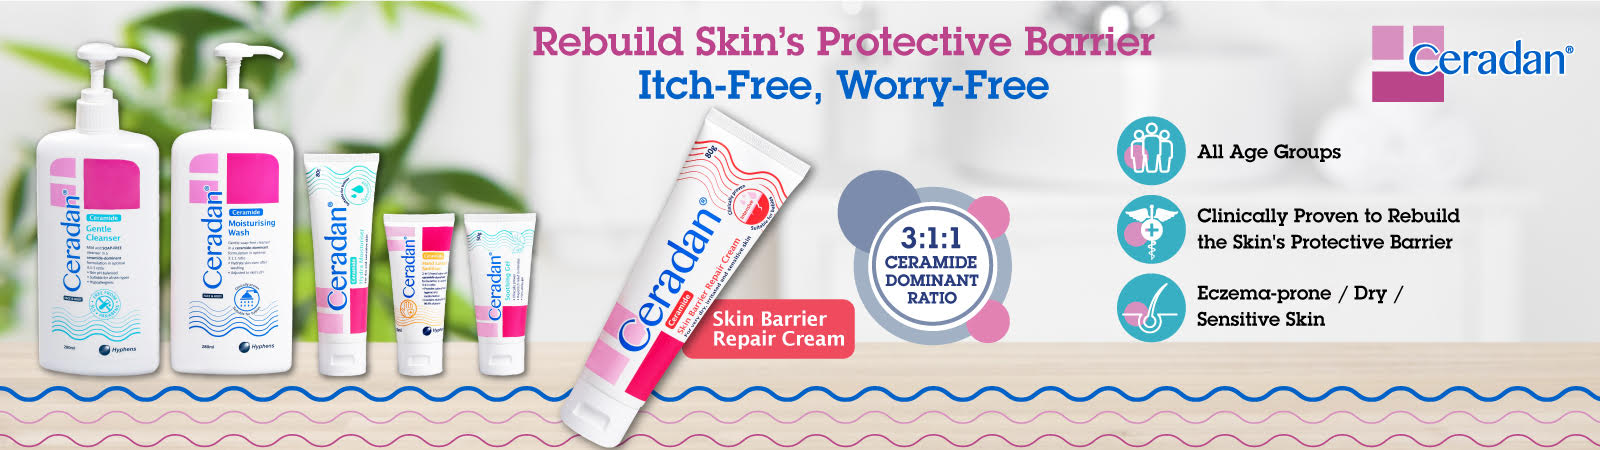 Ceradan Skin Repair Cream